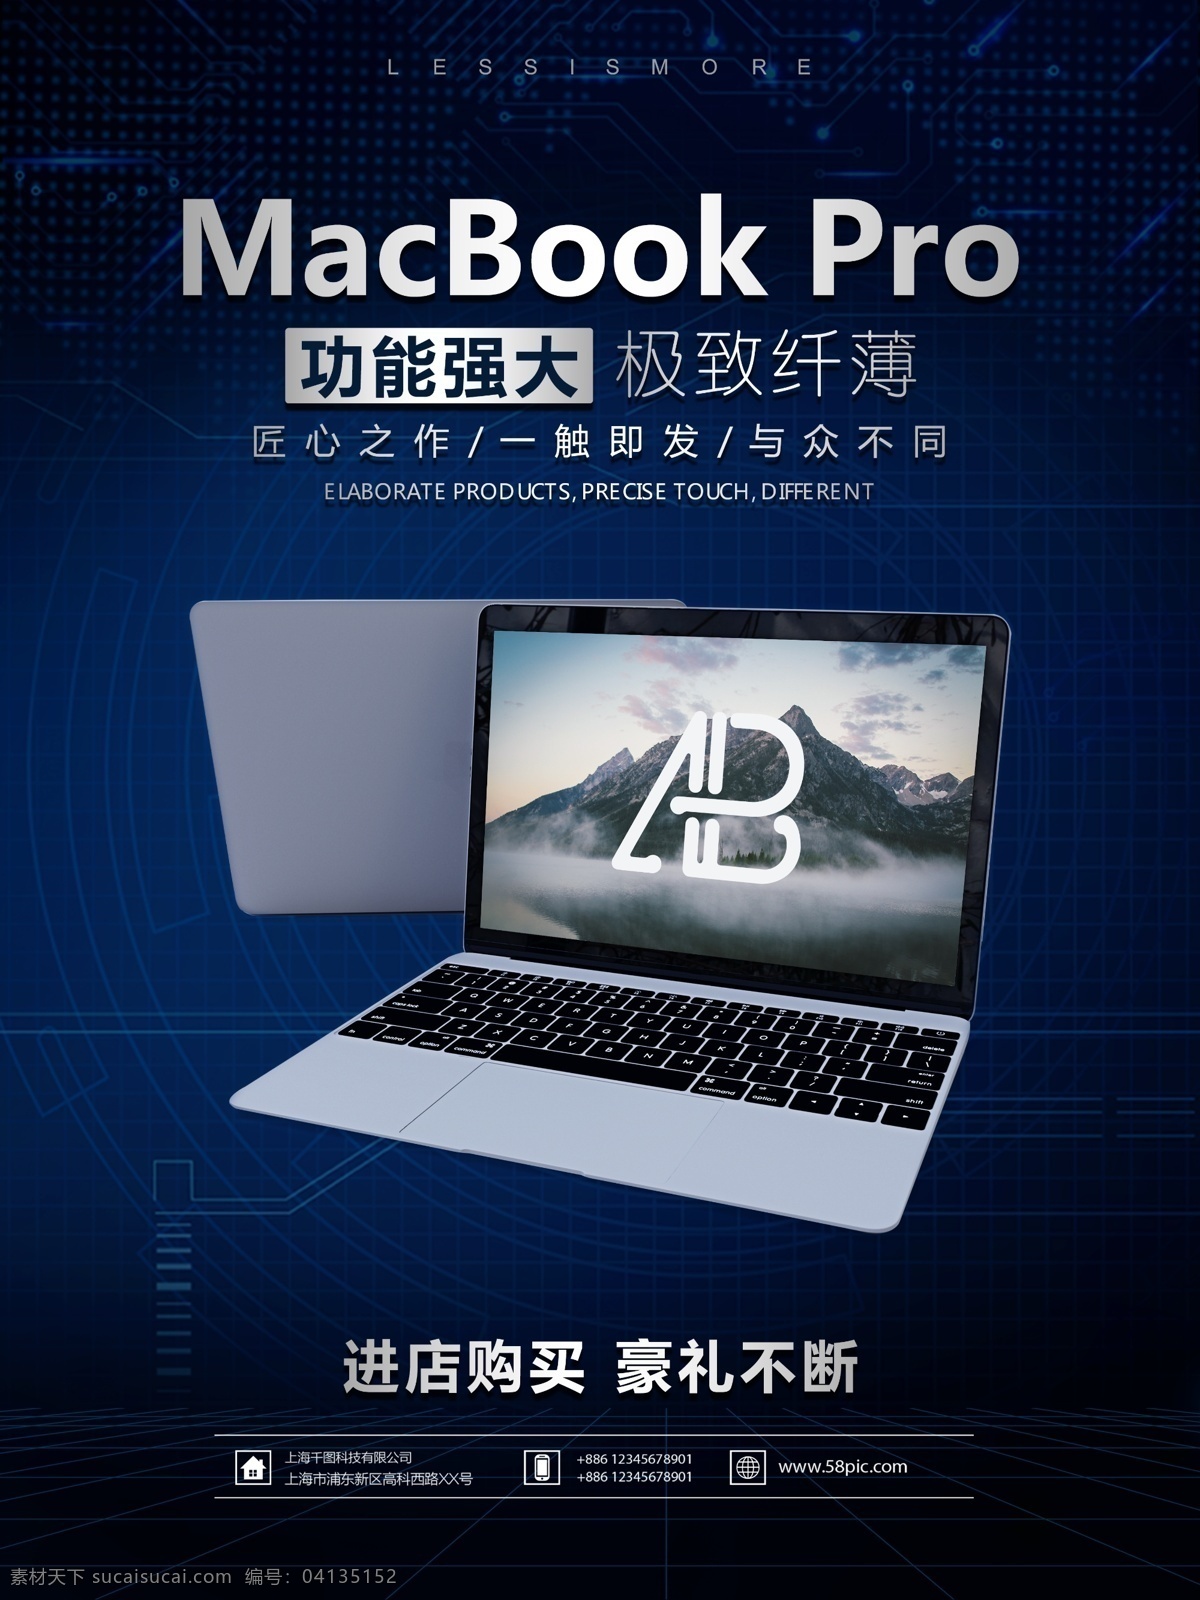 科技 感 macbook 宣传海报 pro海报 苹果 笔记本 电脑 苹果产品 宣传 广告 店面宣传 科技感